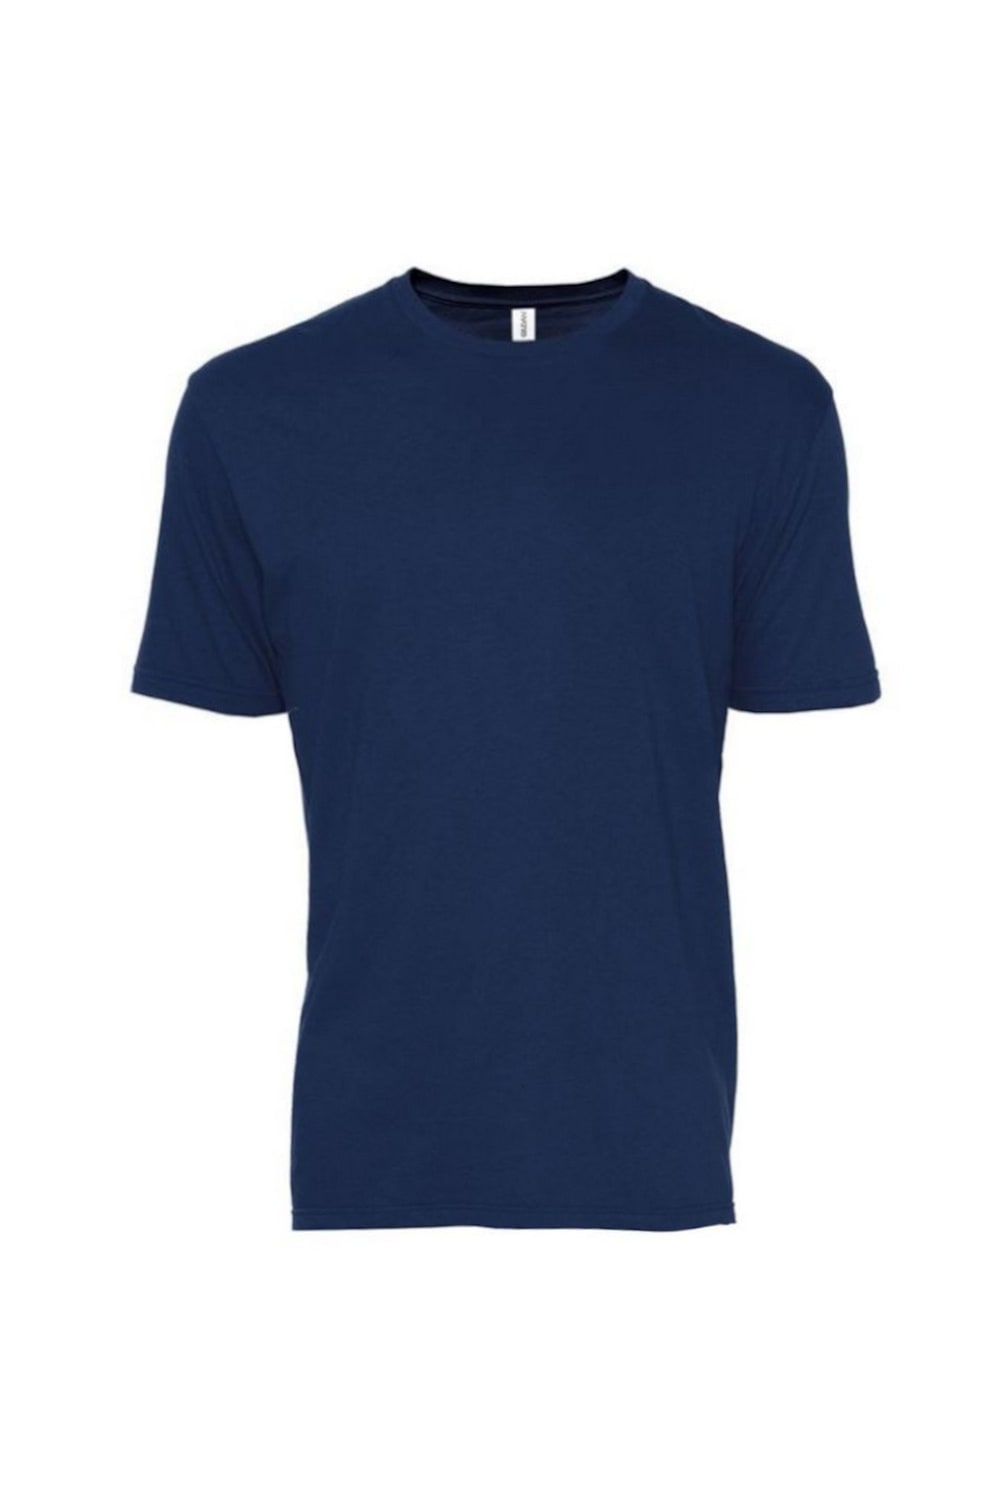 Gildan Adults Unisex SoftStyle EZ Print T-Shirt (Navy)